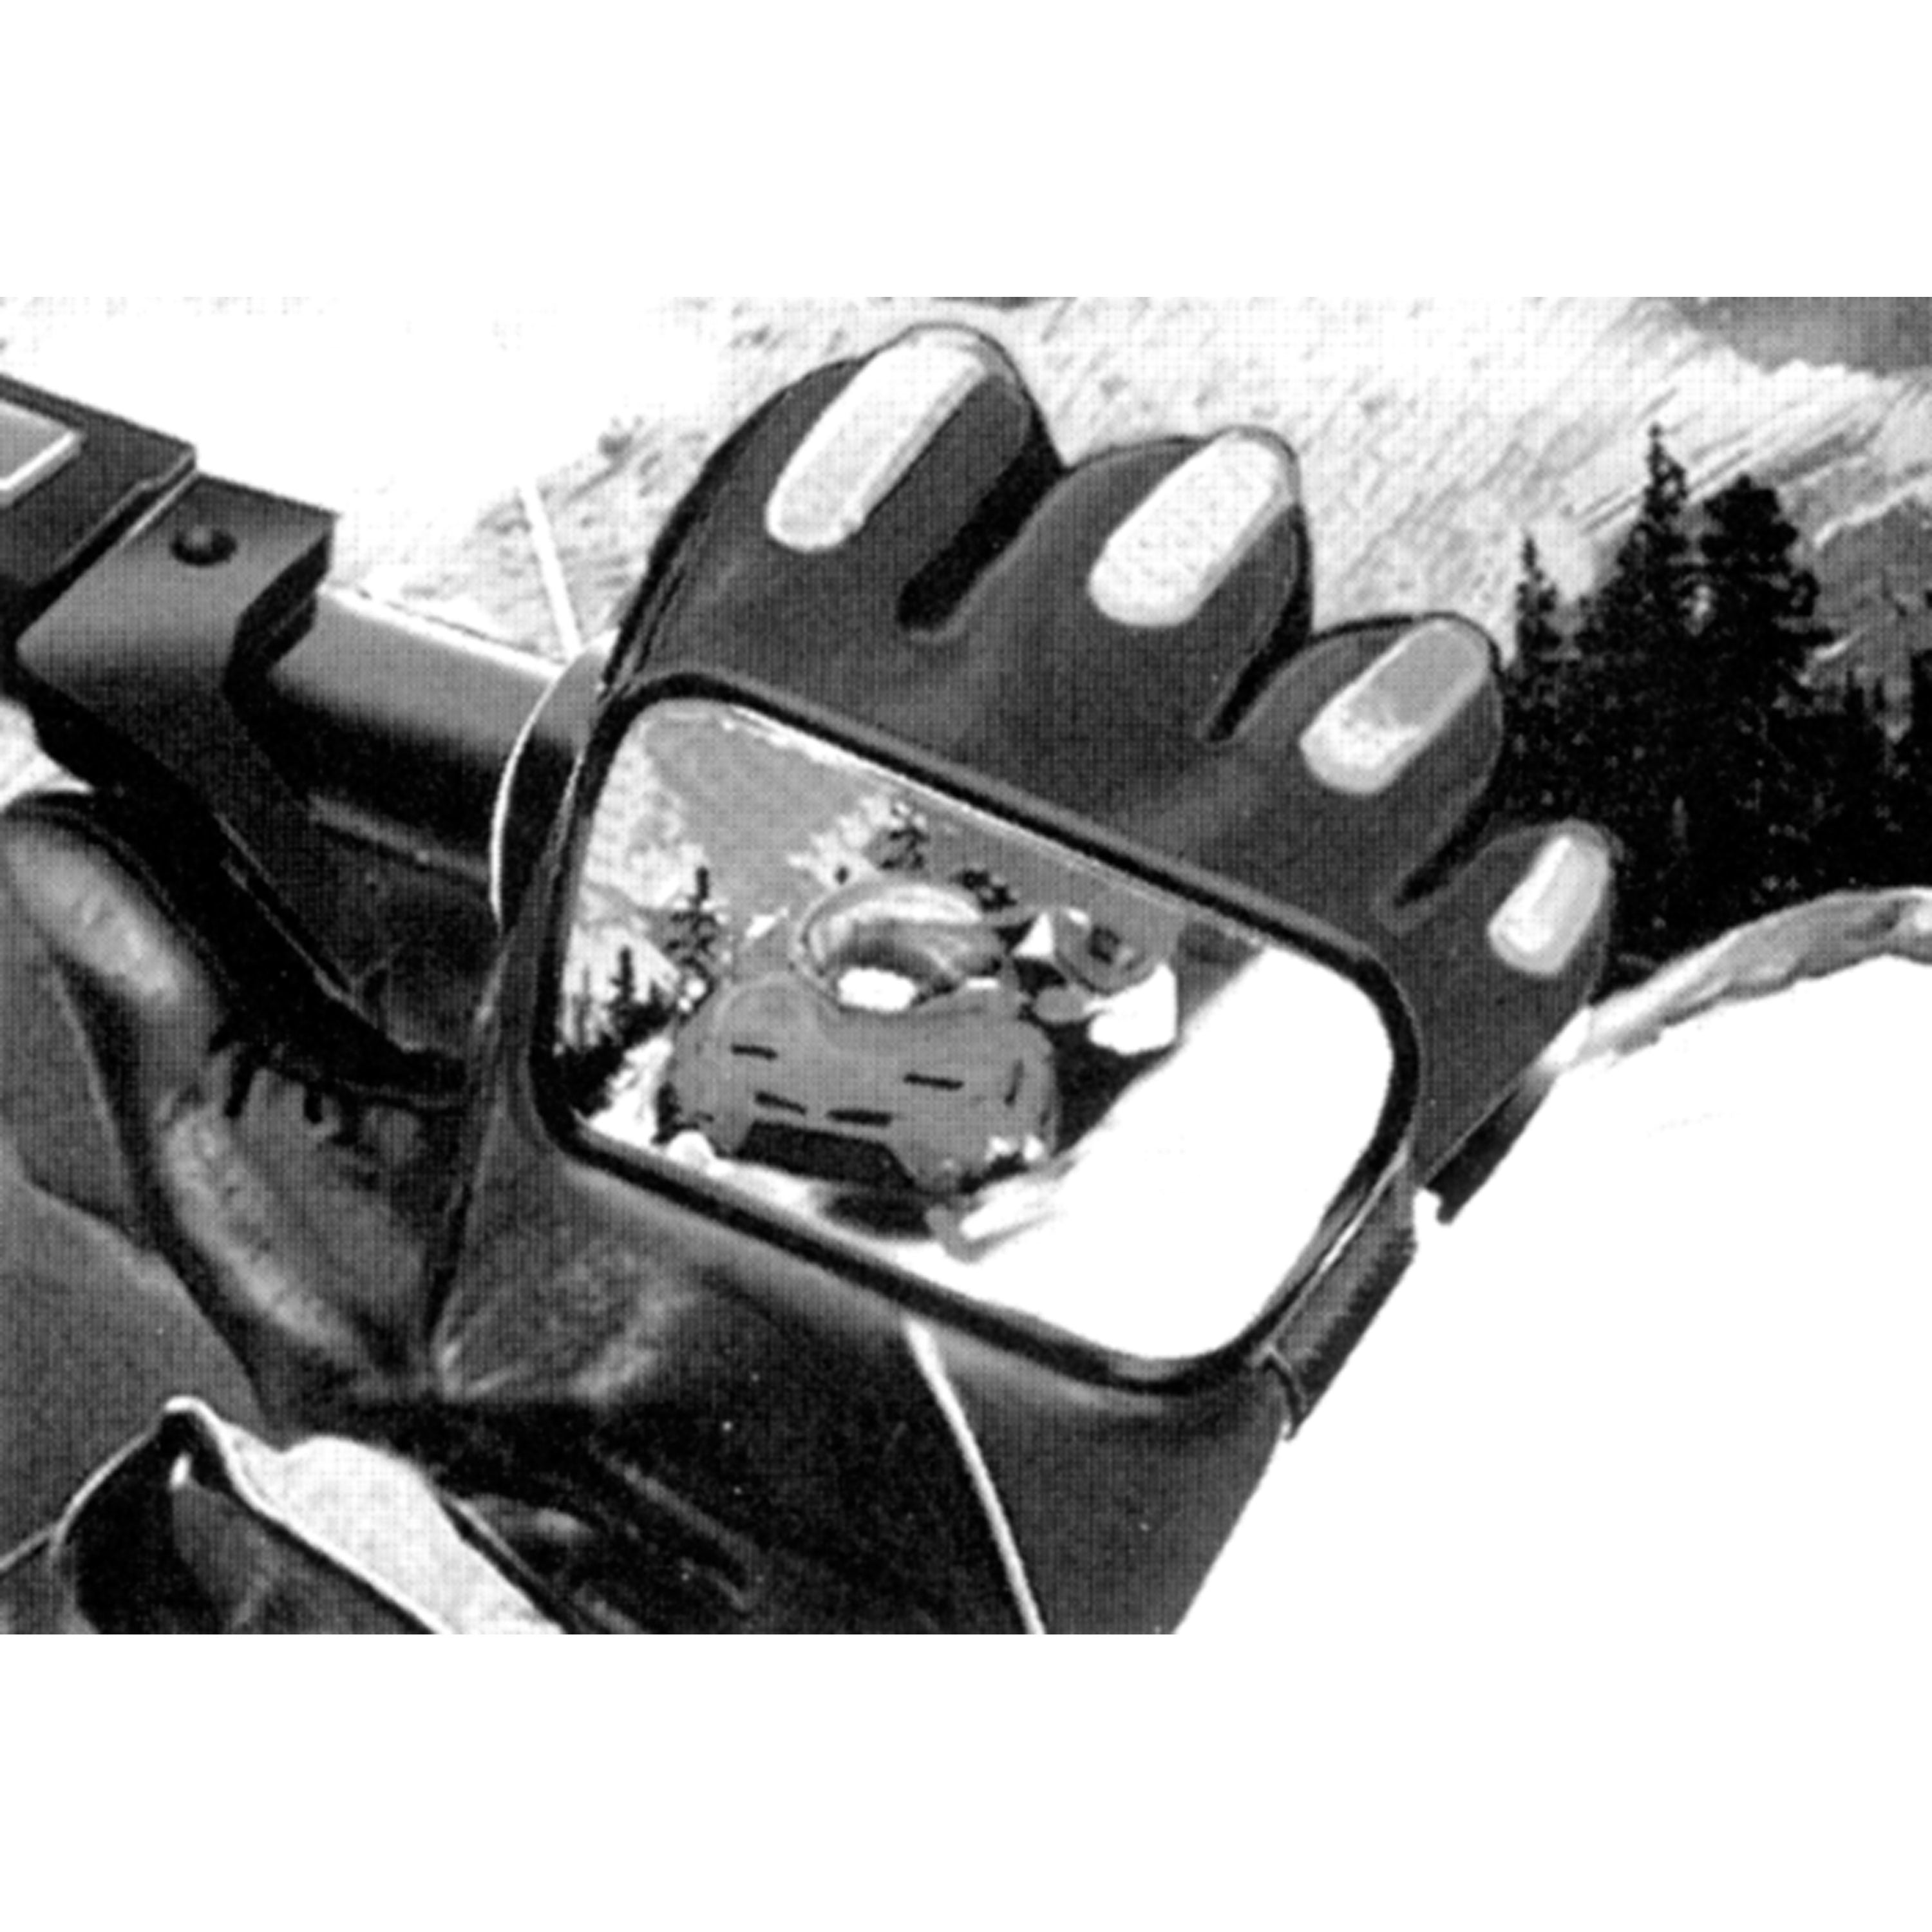 CIPA 11125 Hand Mirror with Velcro Attachment